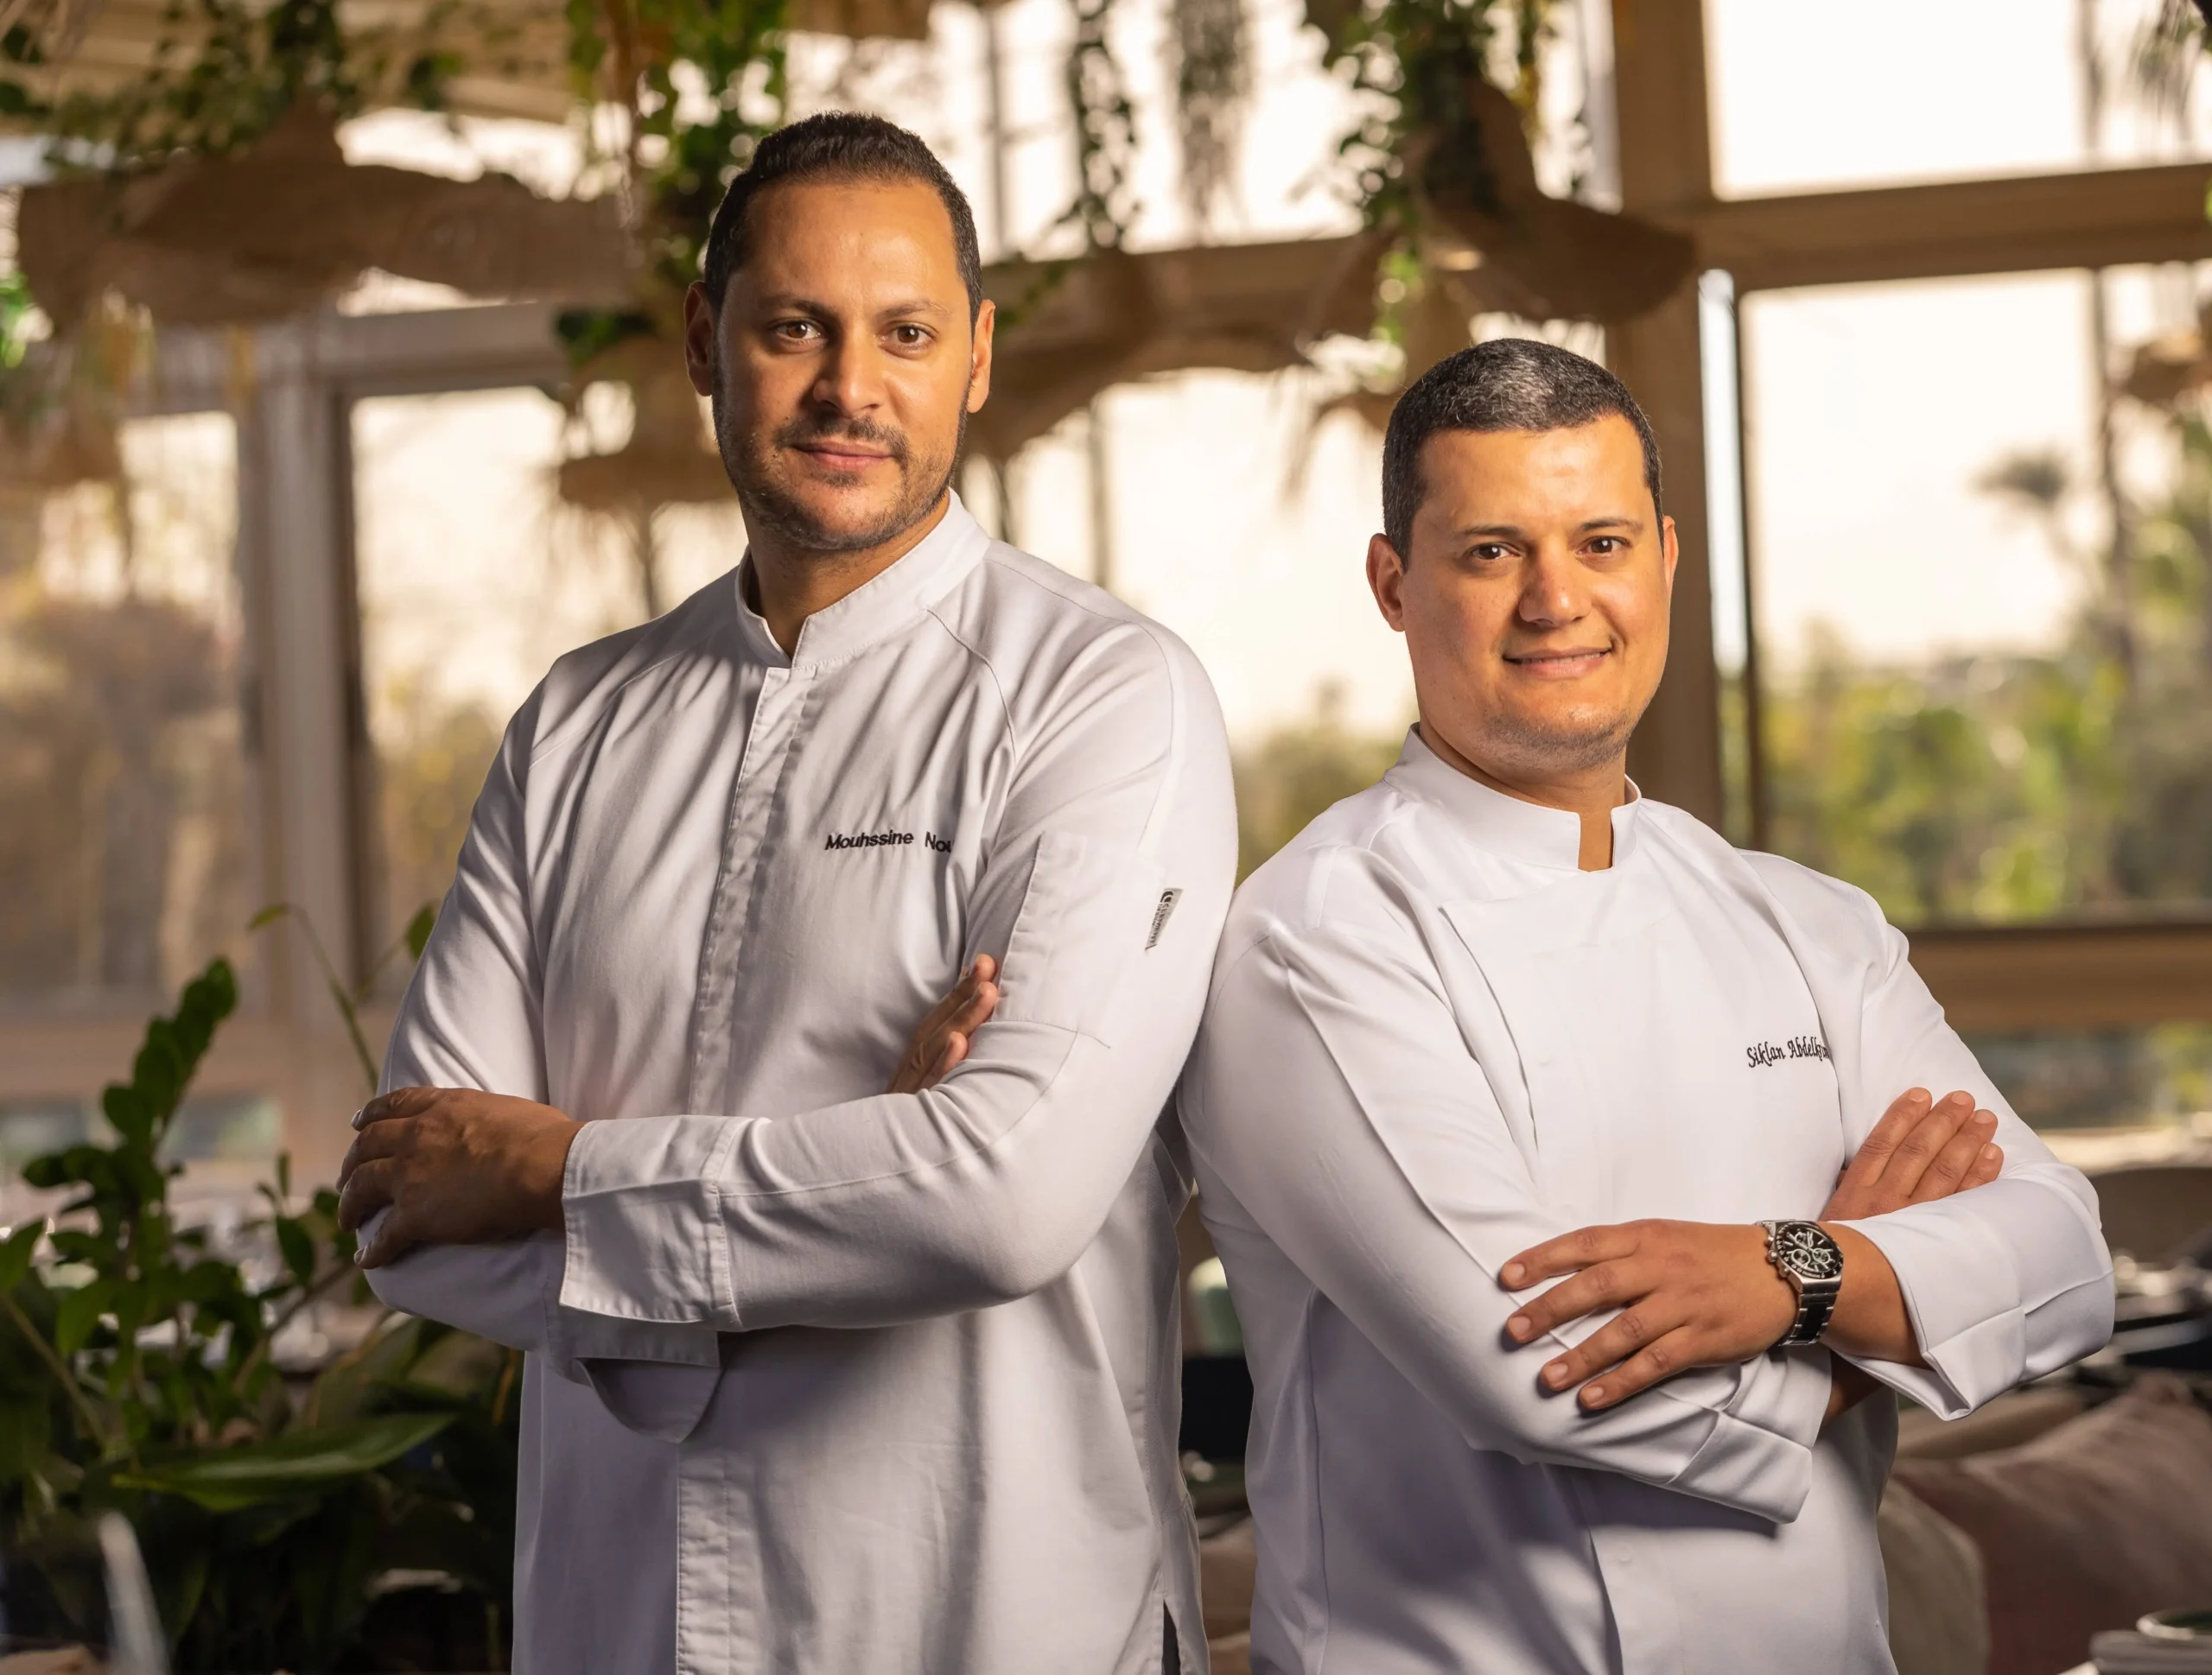 Our chefs - Safran Marrakech